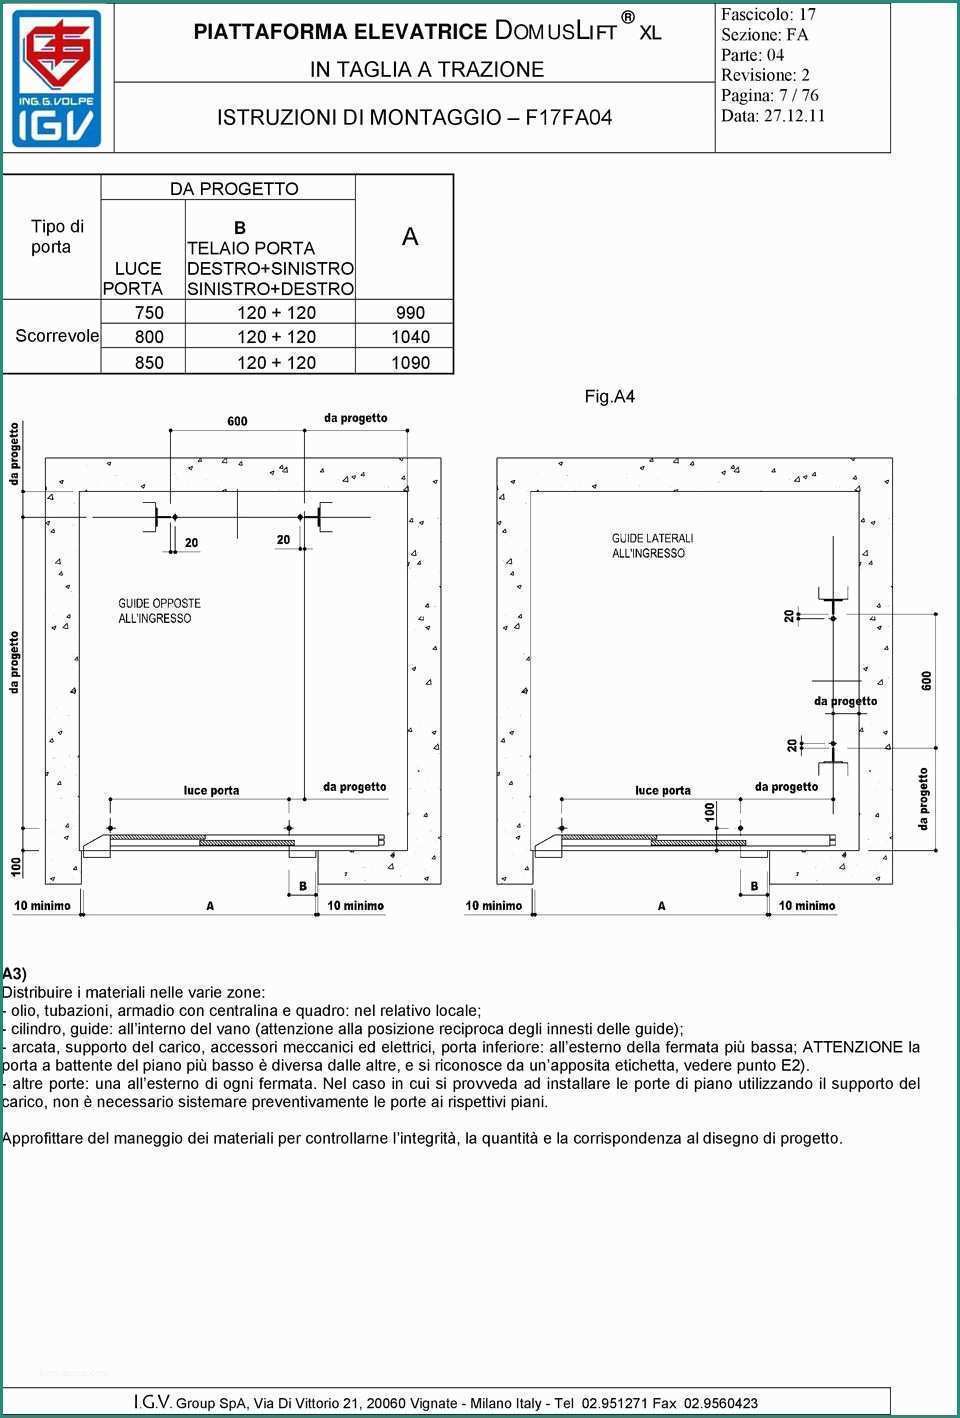 Piattaforma Elevatrice Dwg E Domuslift Xl Igv istruzioni Di Montaggio Piattaforma